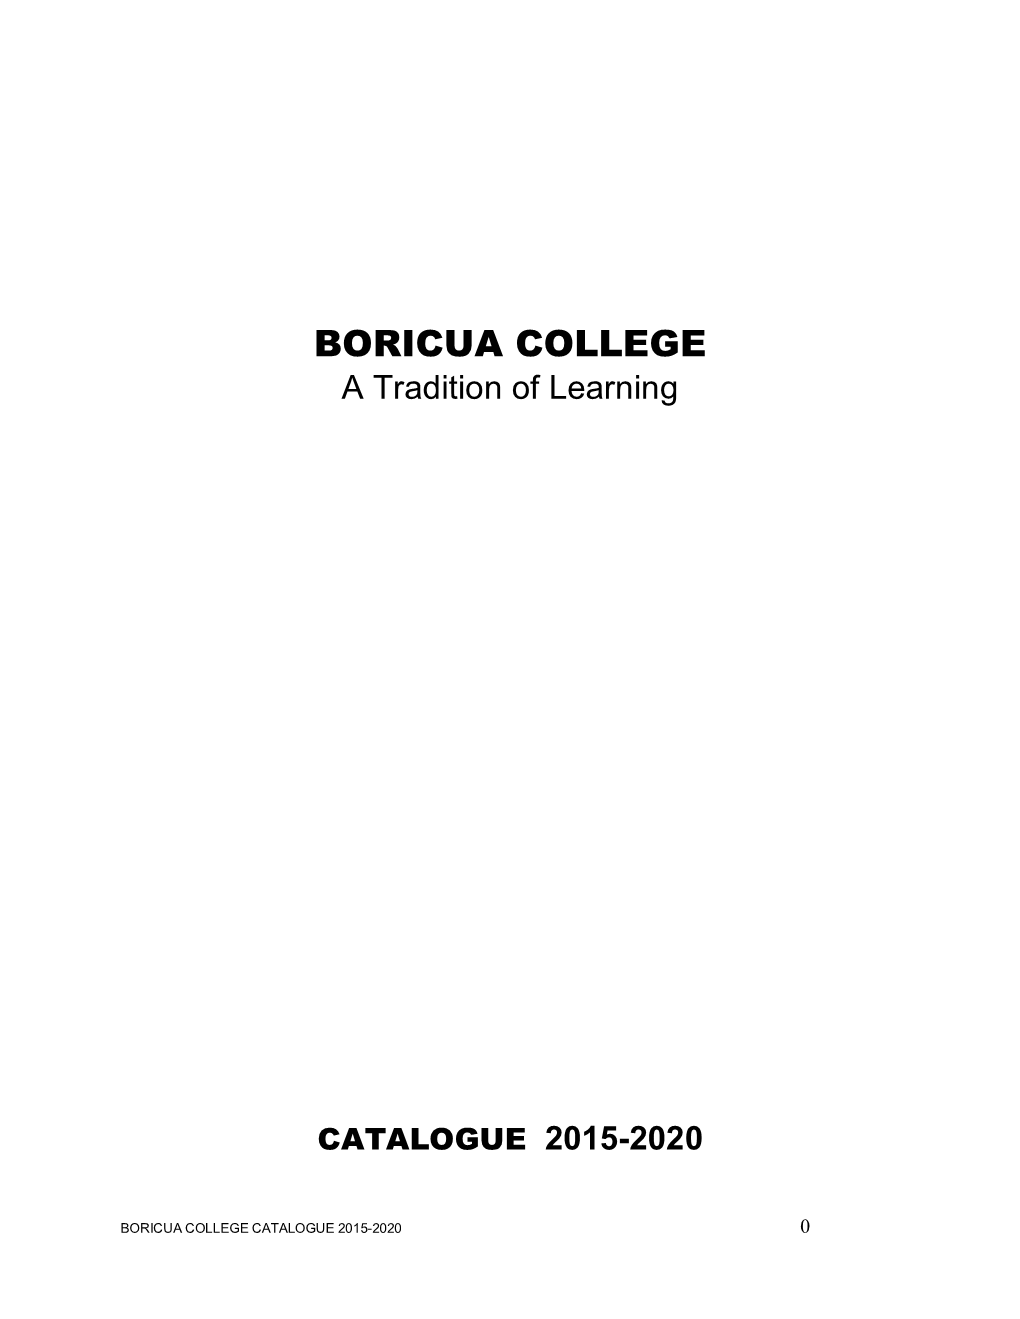 Catalogue 2015-2020